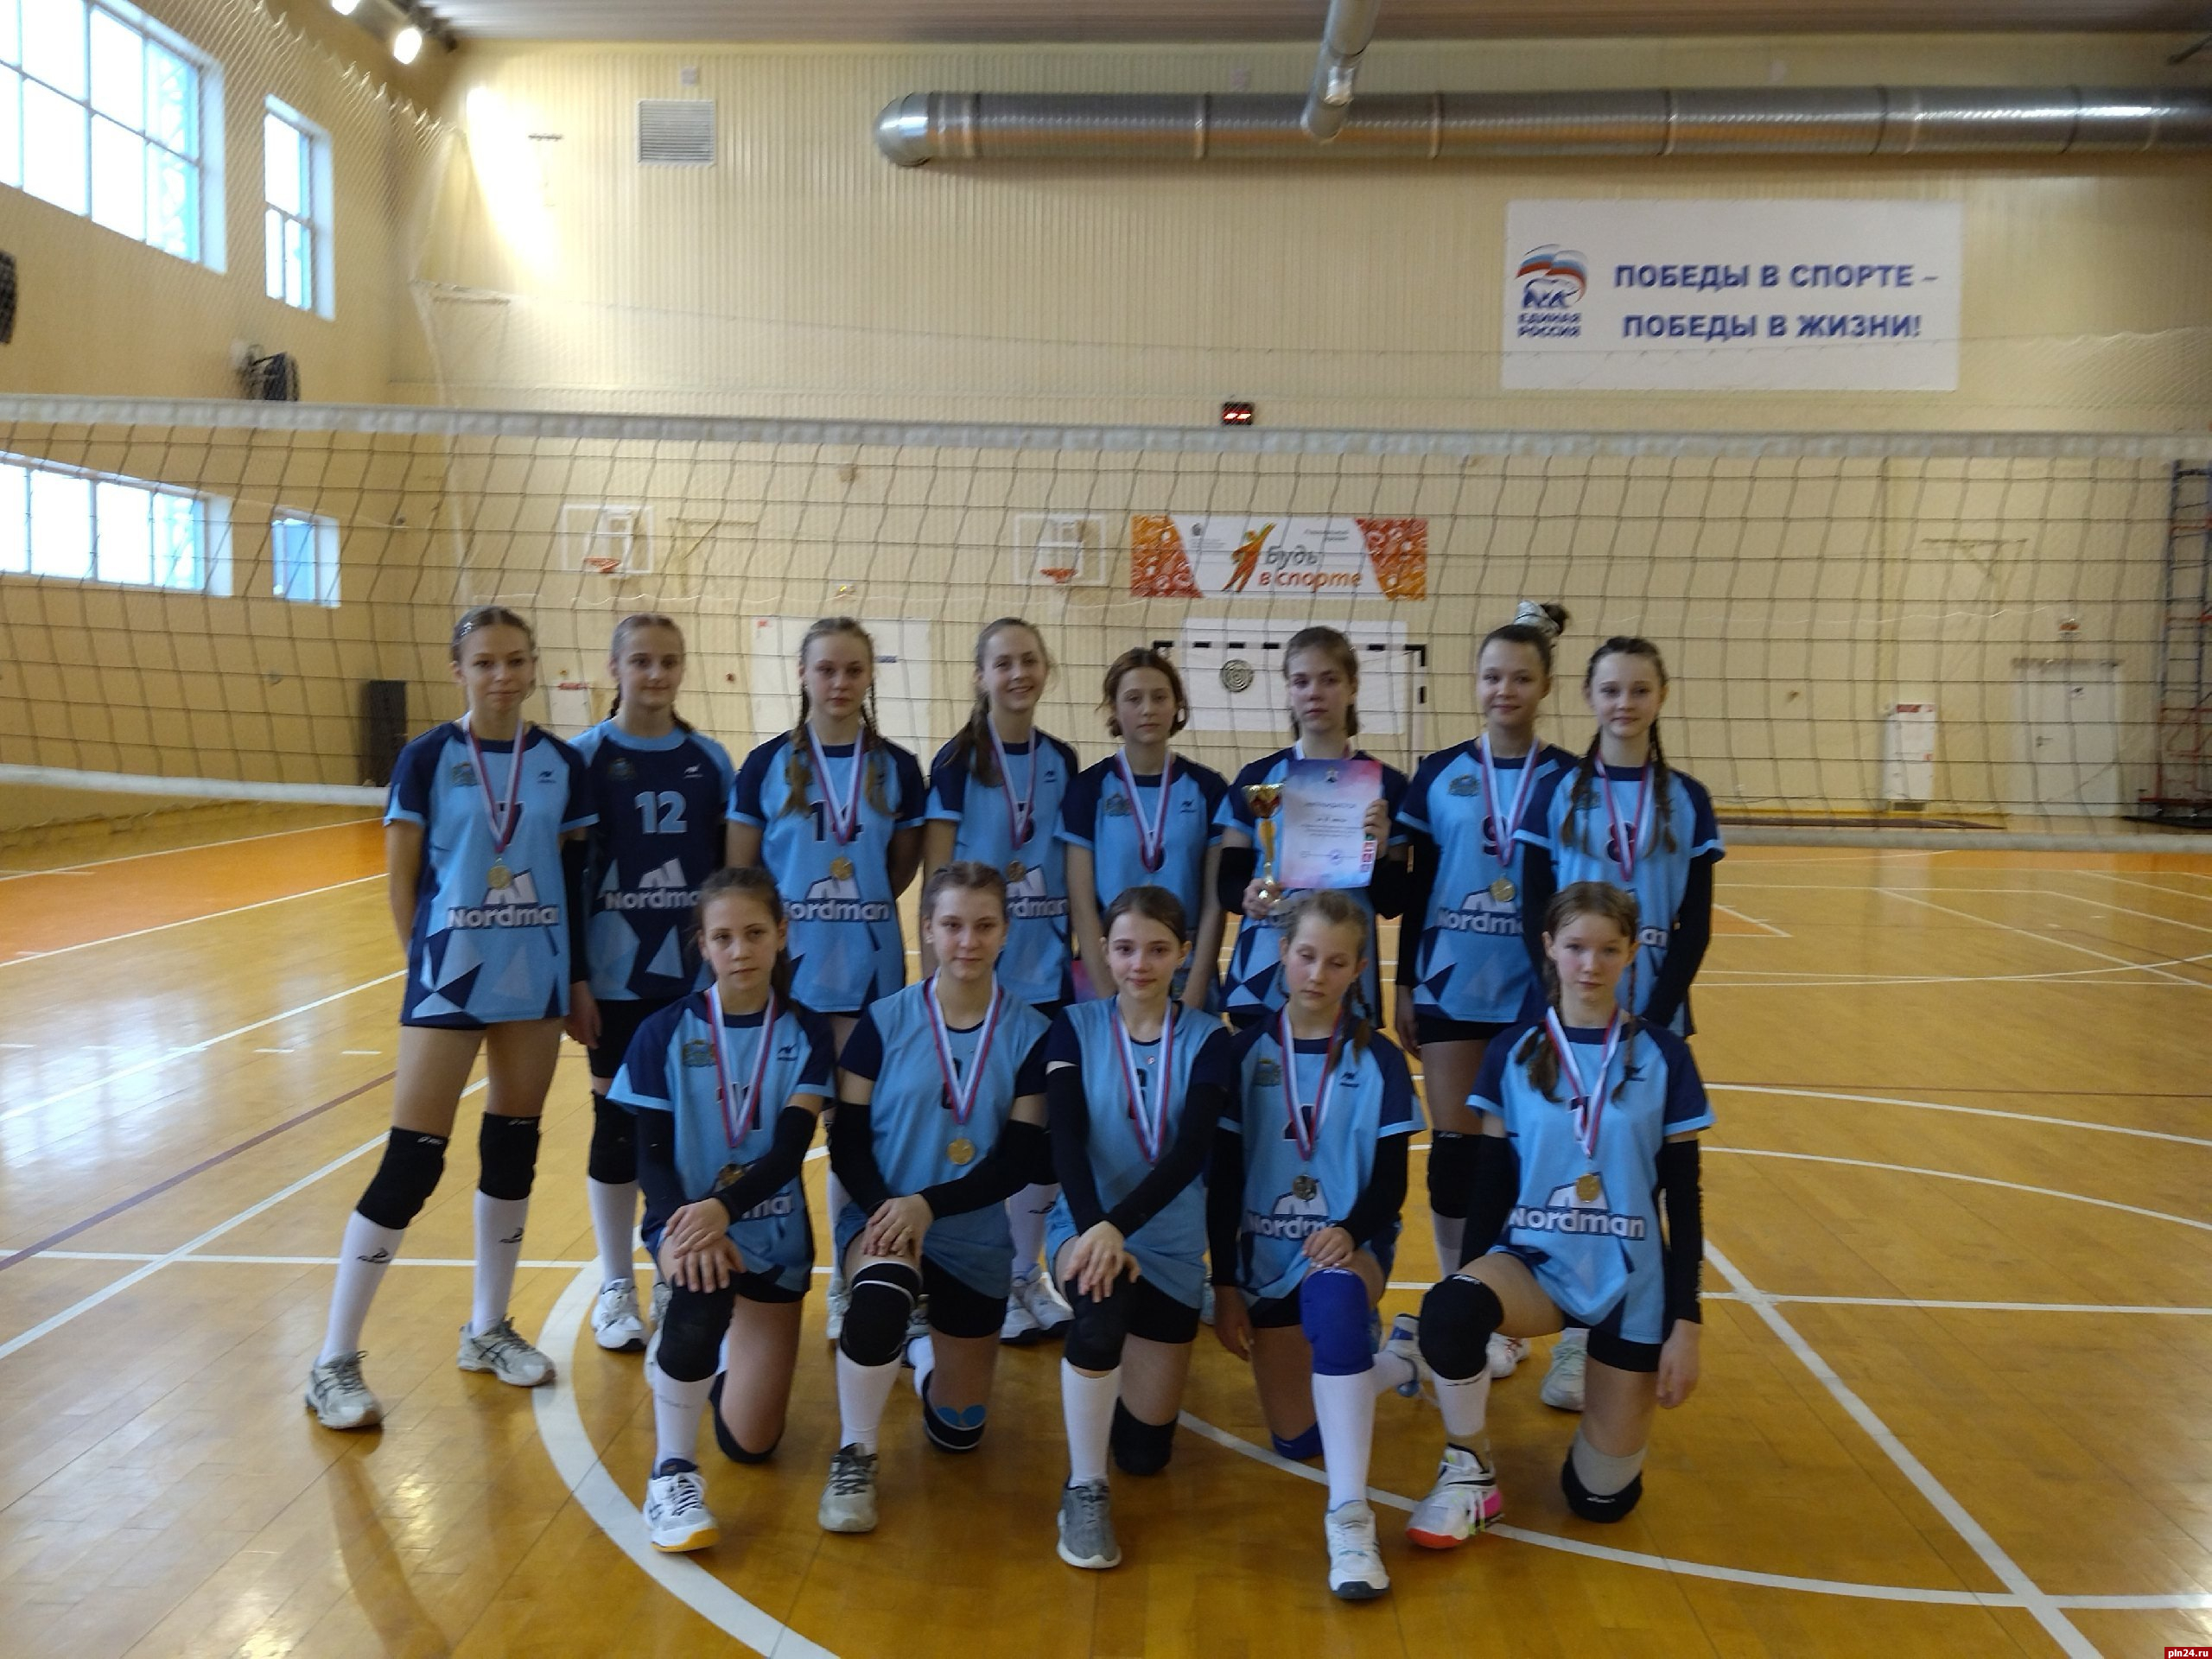 Команда спортшколы «Бригантина» стала призером на соревнованиях по волейболу